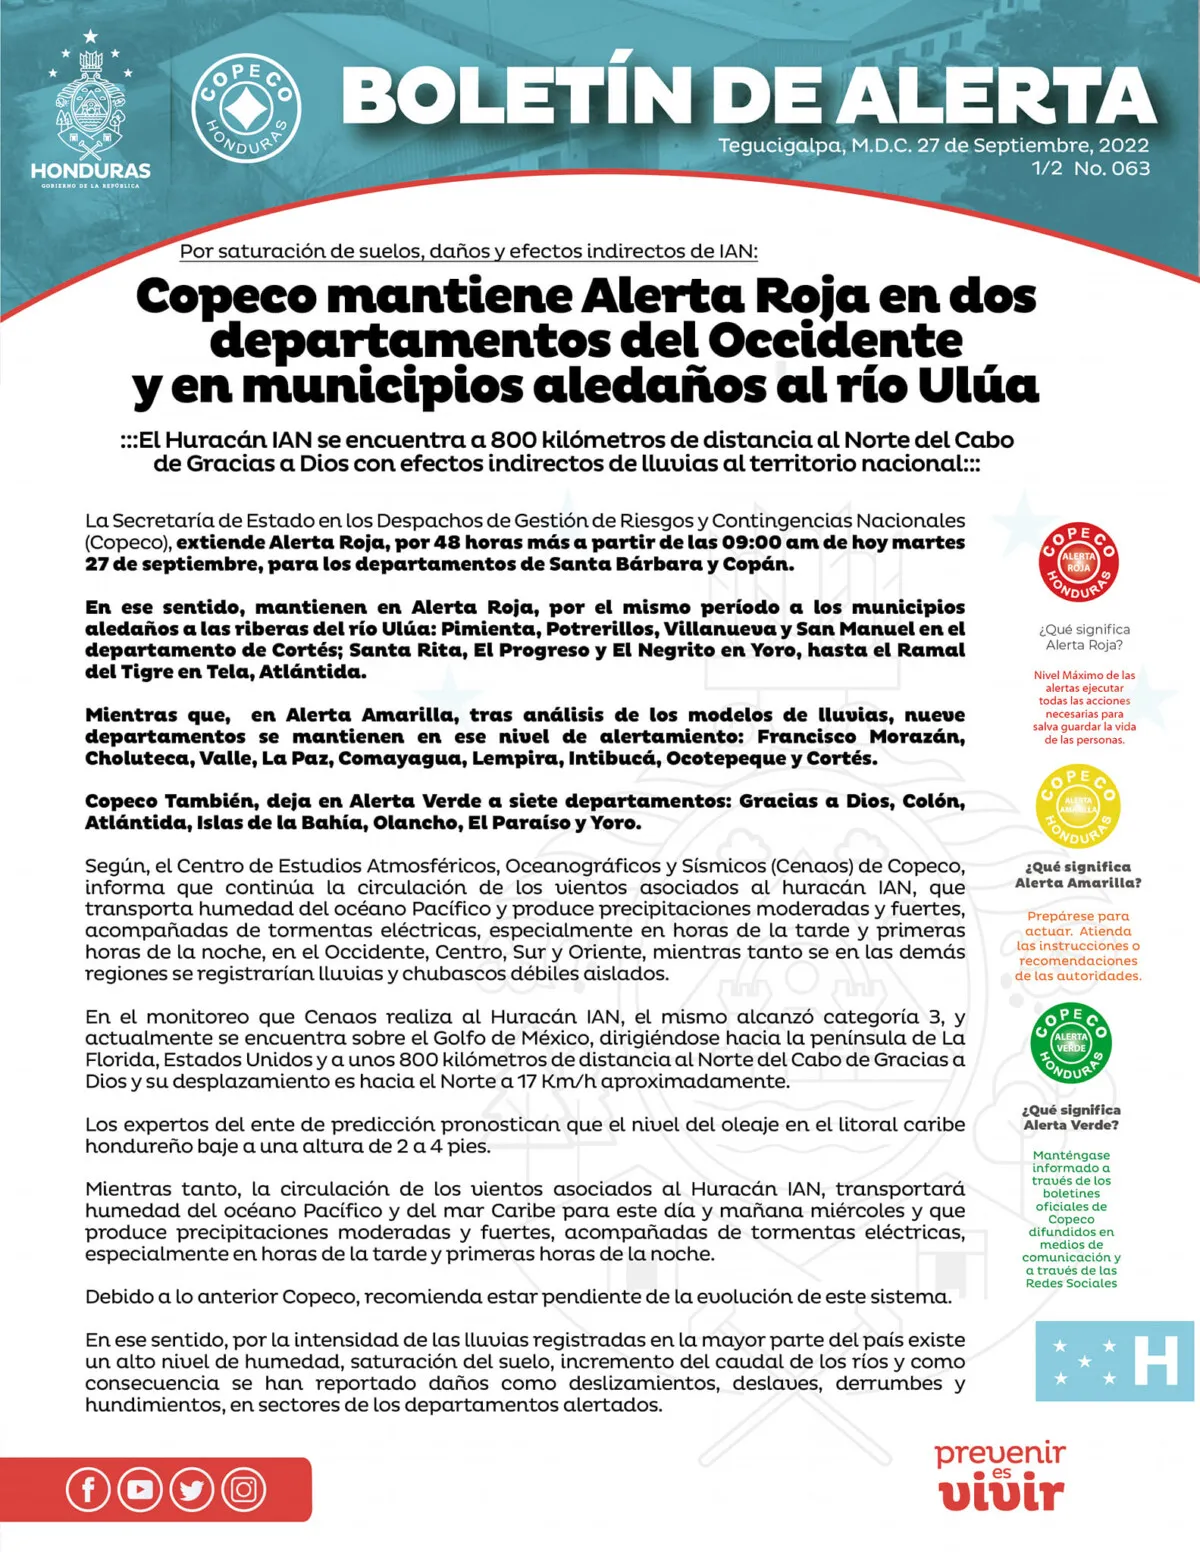 Copeco mantiene Alerta Roja en dos departamentos del Occidente y en municipios aledaños al río Ulúa 01